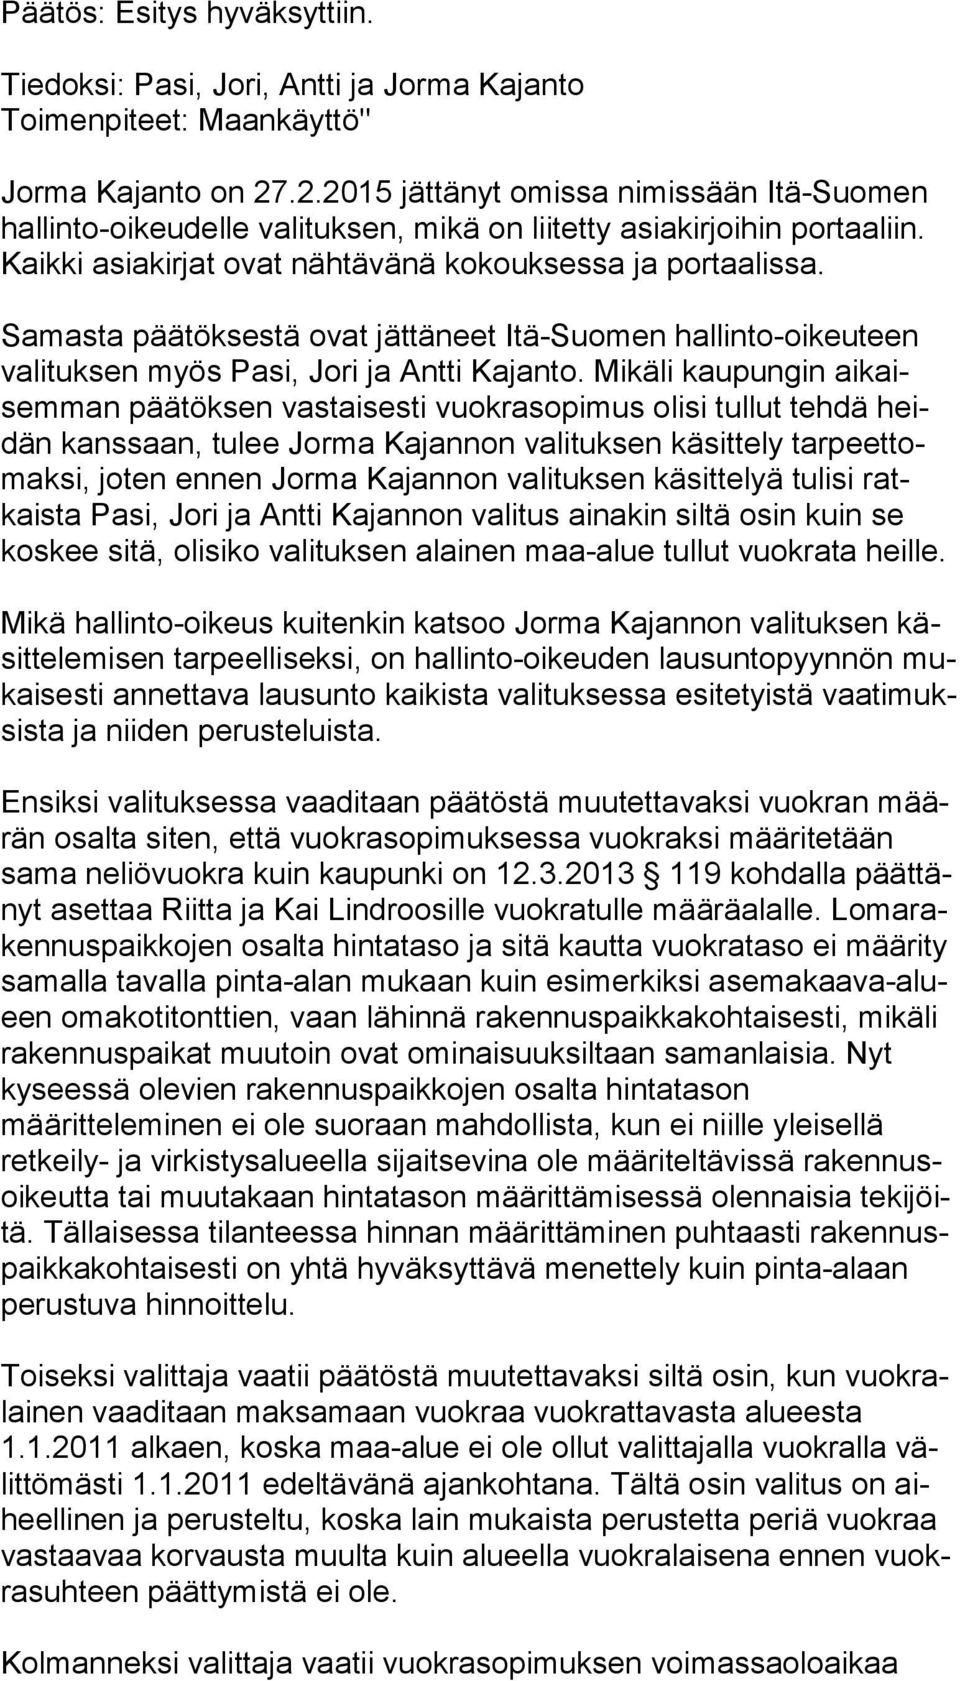 Samasta päätöksestä ovat jättäneet Itä-Suomen hallinto-oikeuteen va li tuk sen myös Pasi, Jori ja Antti Kajanto.